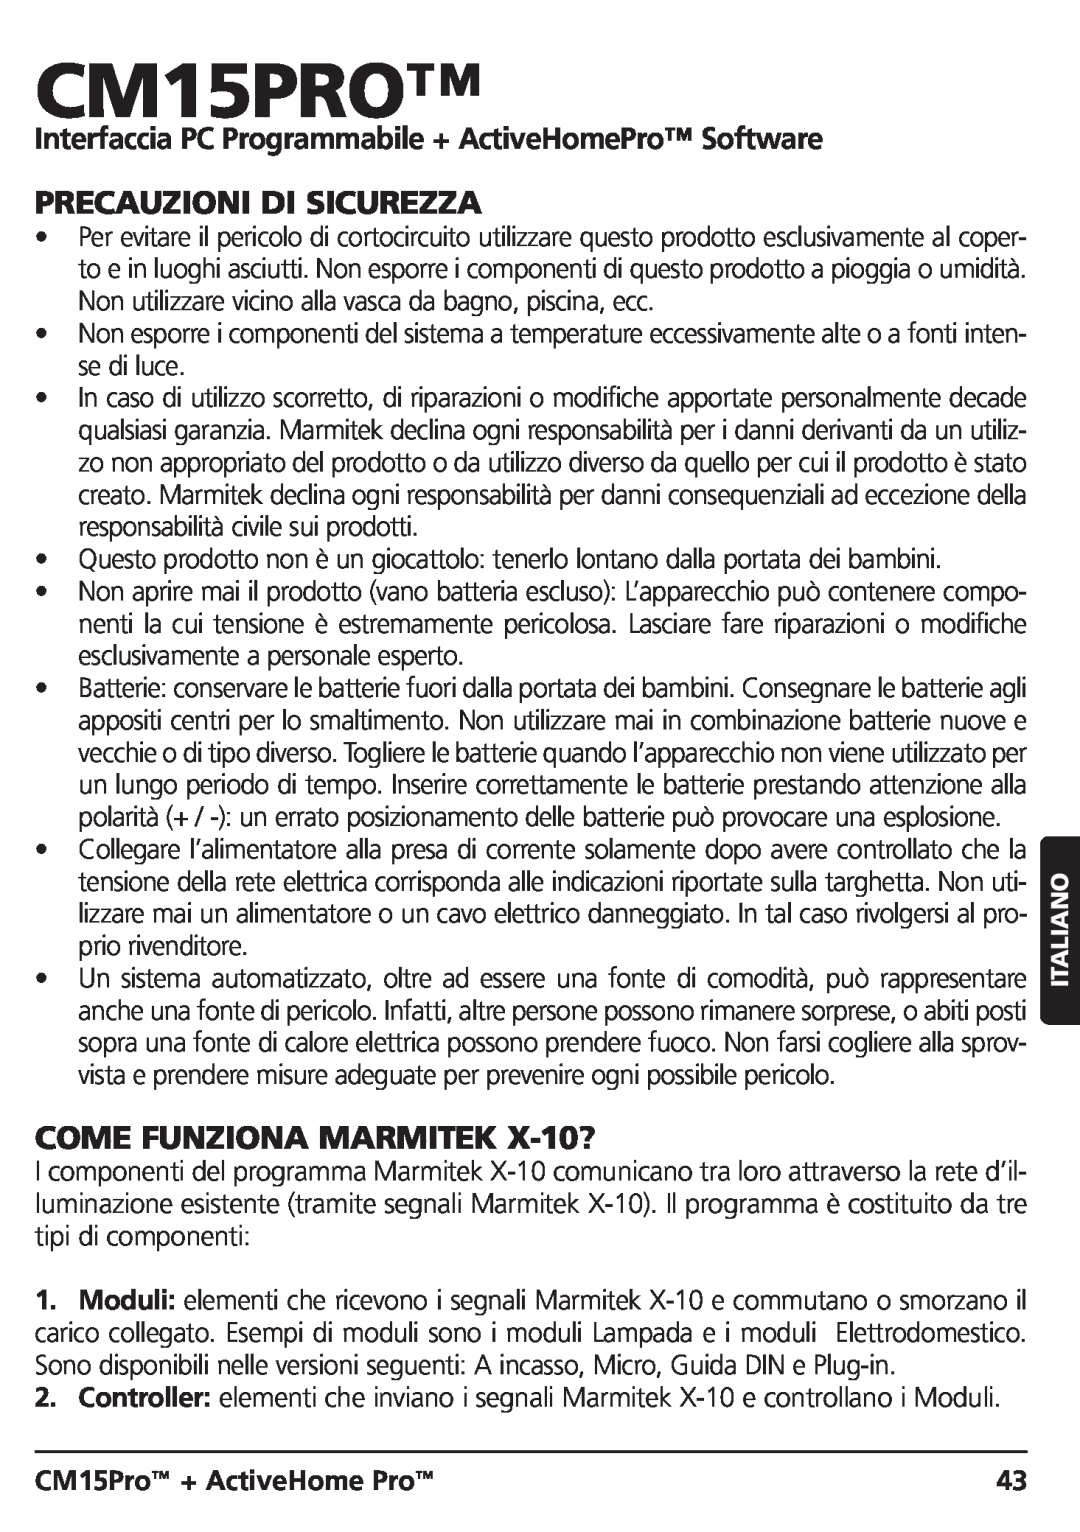 Marmitek CM15PRO manual Precauzioni Di Sicurezza, COME FUNZIONA MARMITEK X-10?, CM15Pro + ActiveHome Pro 